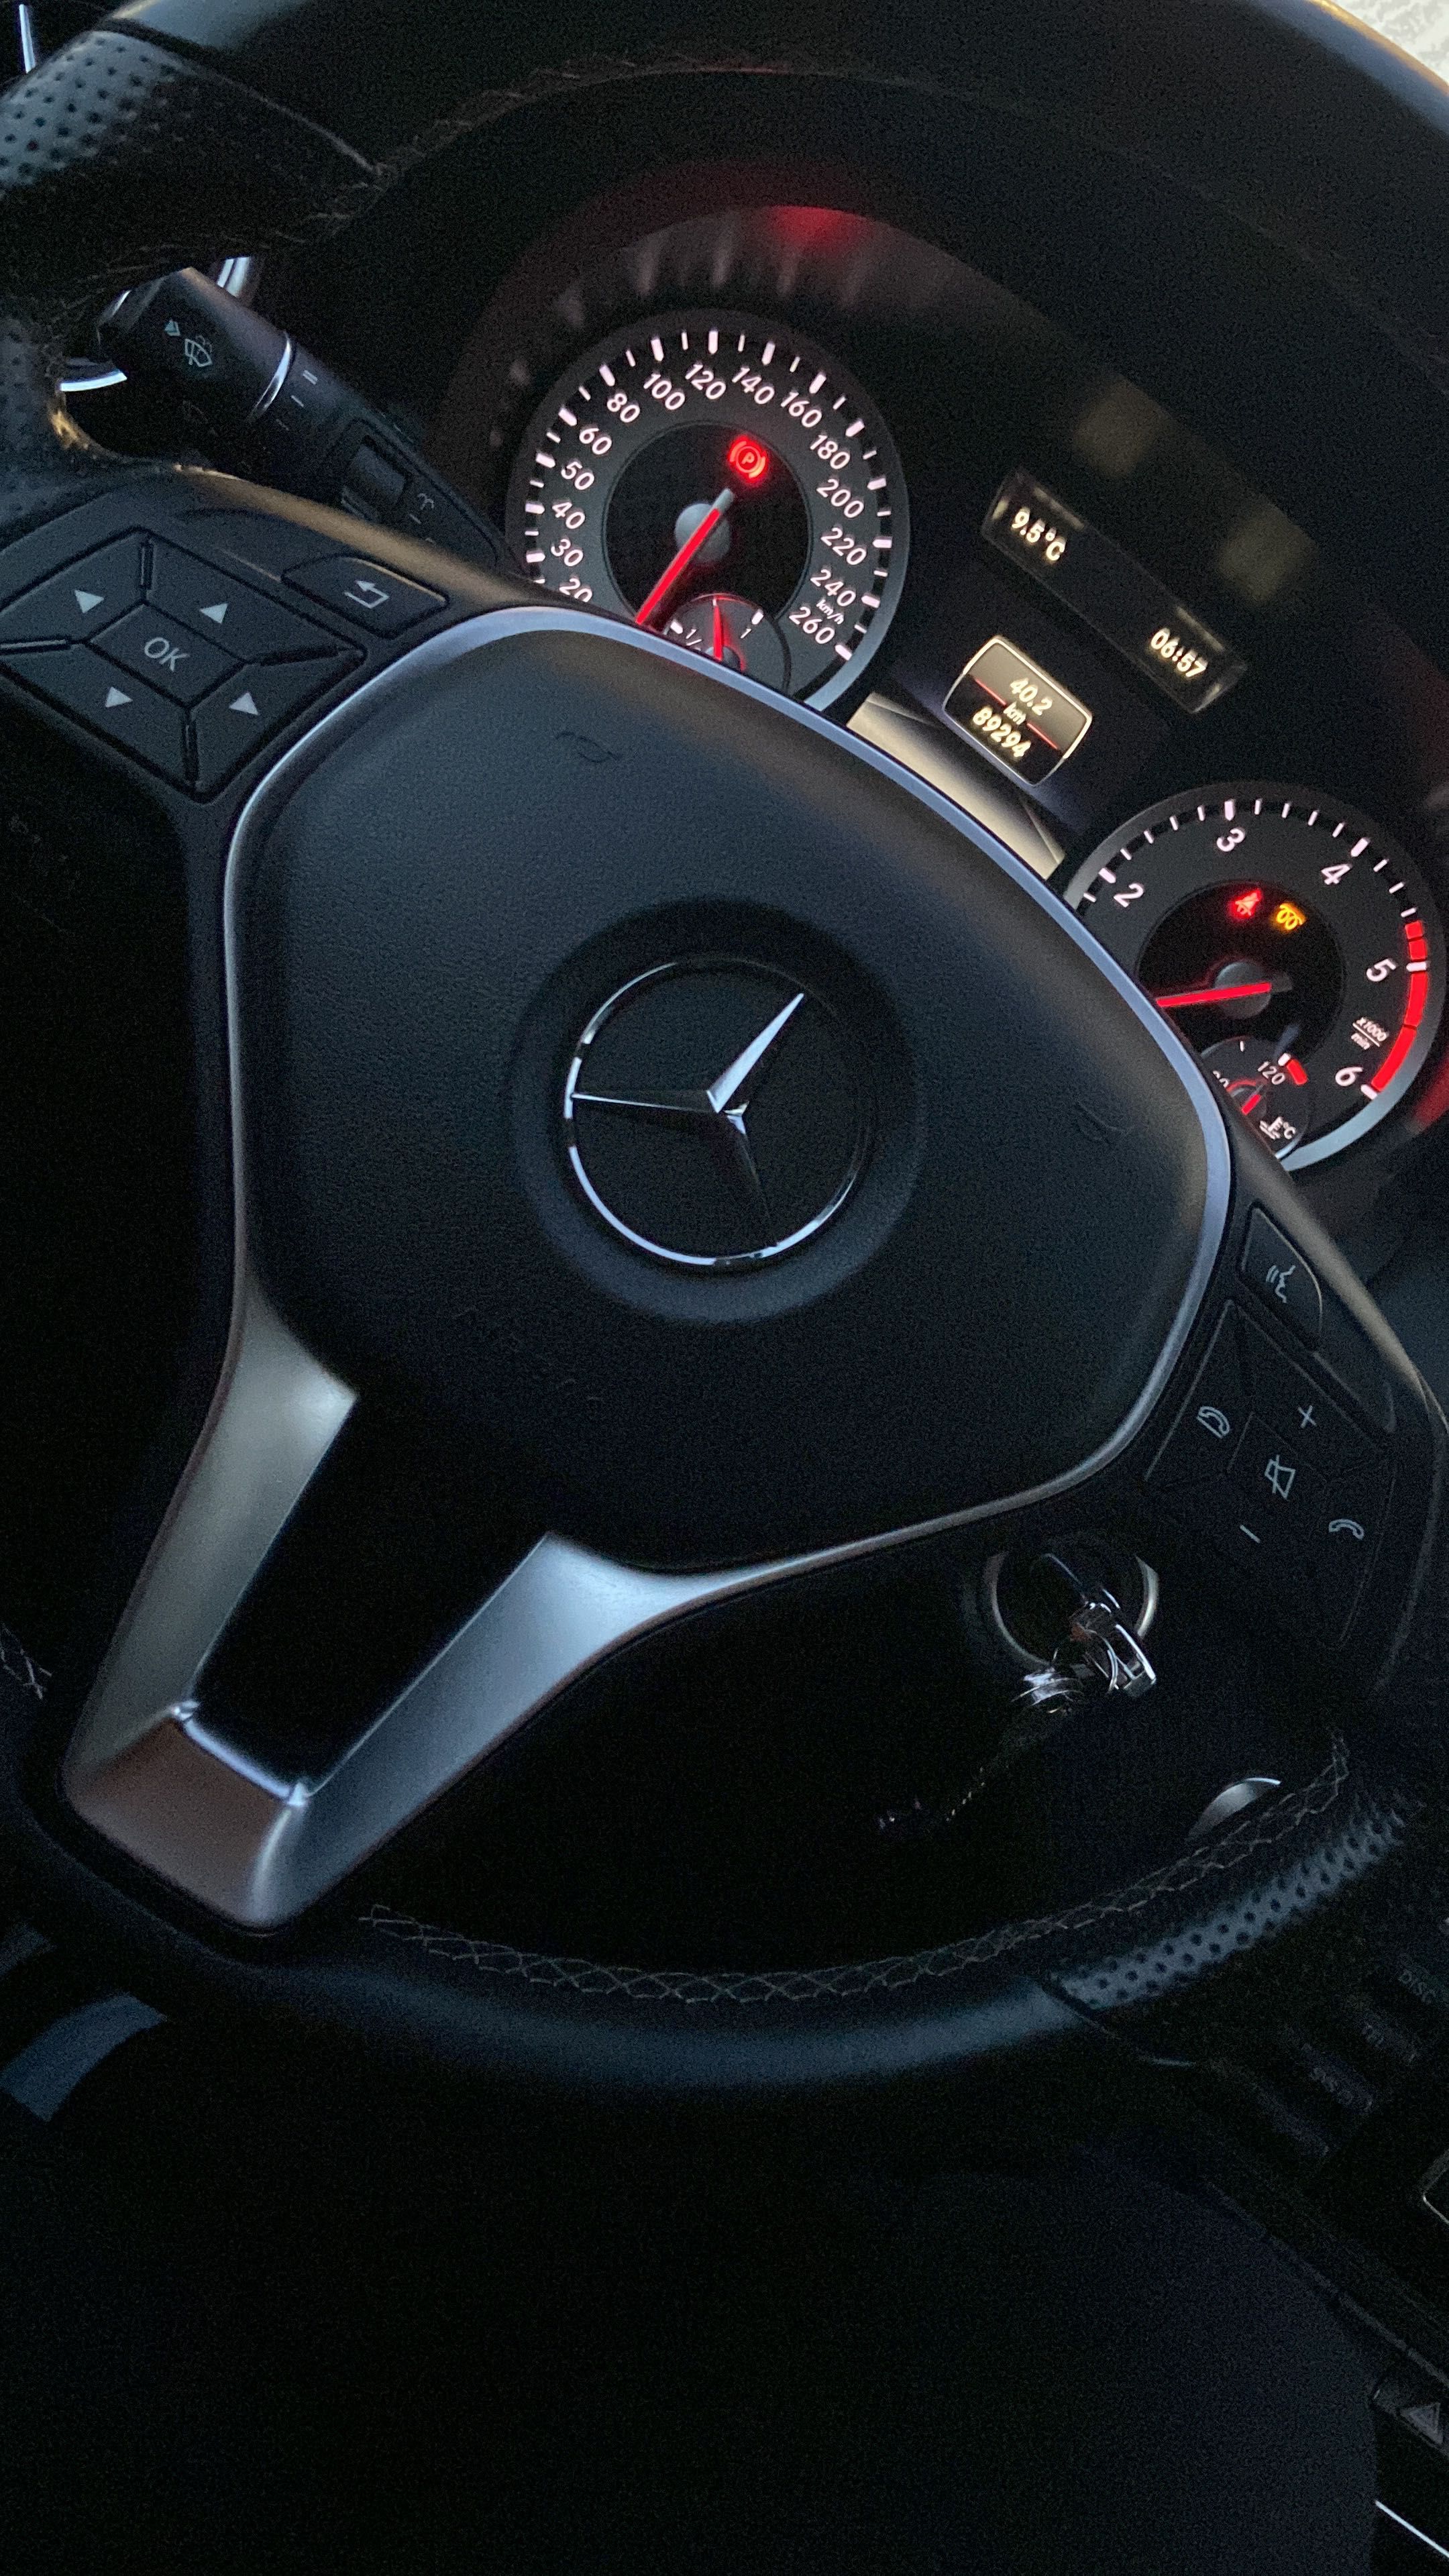 Mercedes Benz A 160 CDI 89000km 2015